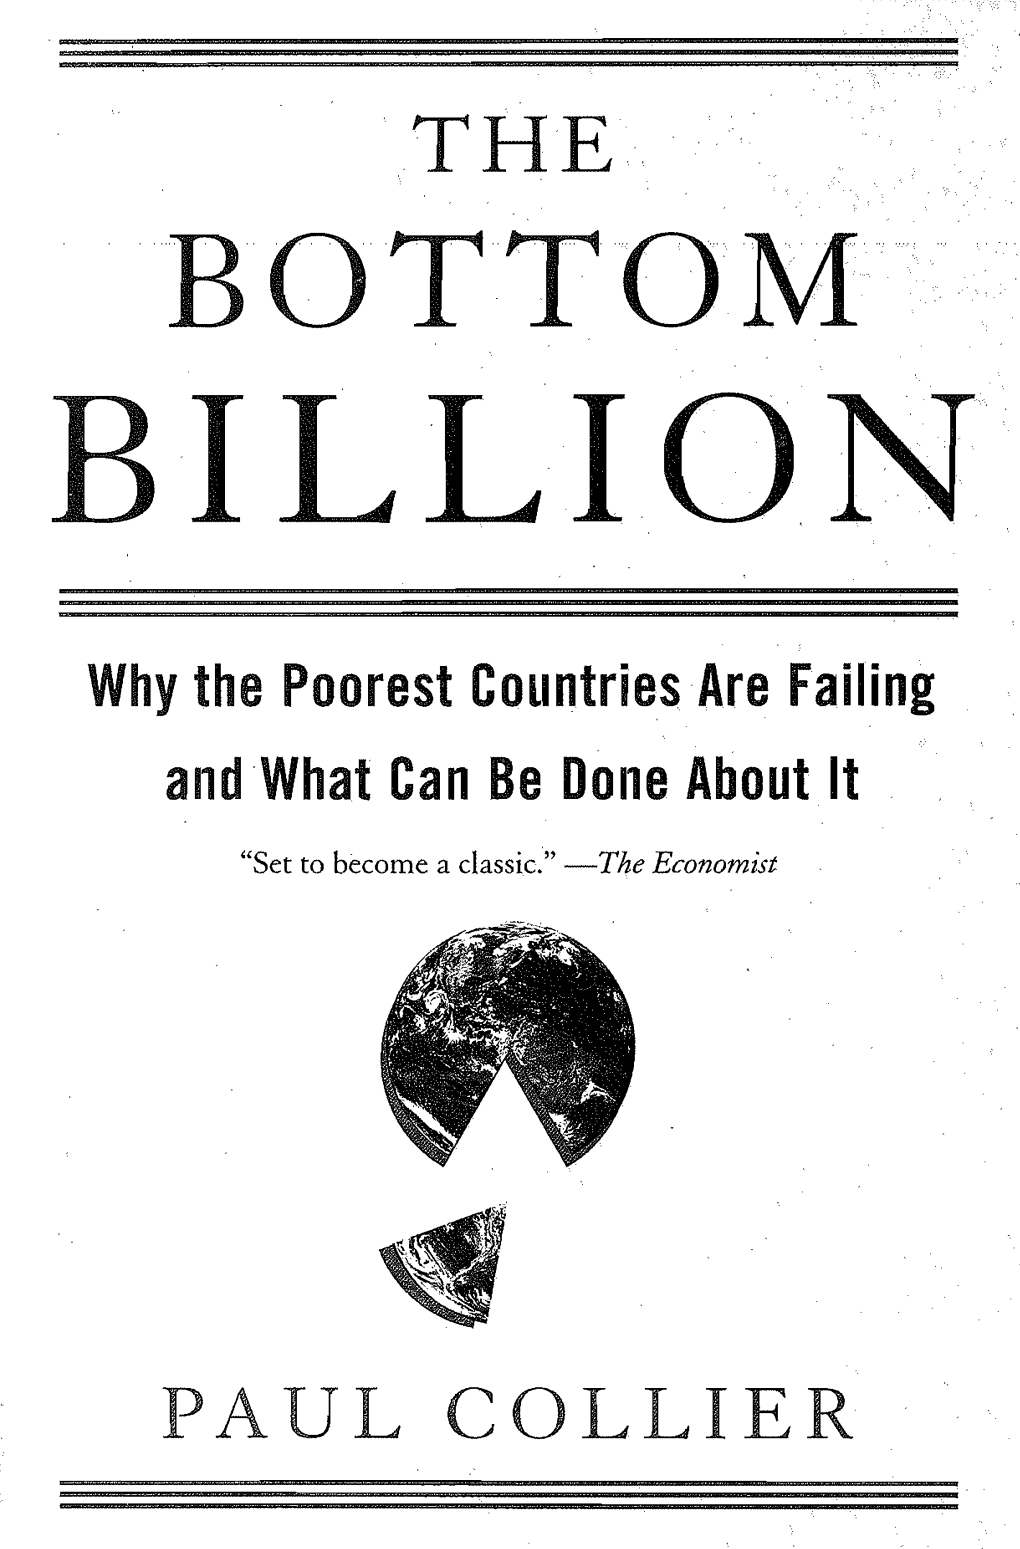 Bottom-Billion1.Pdf